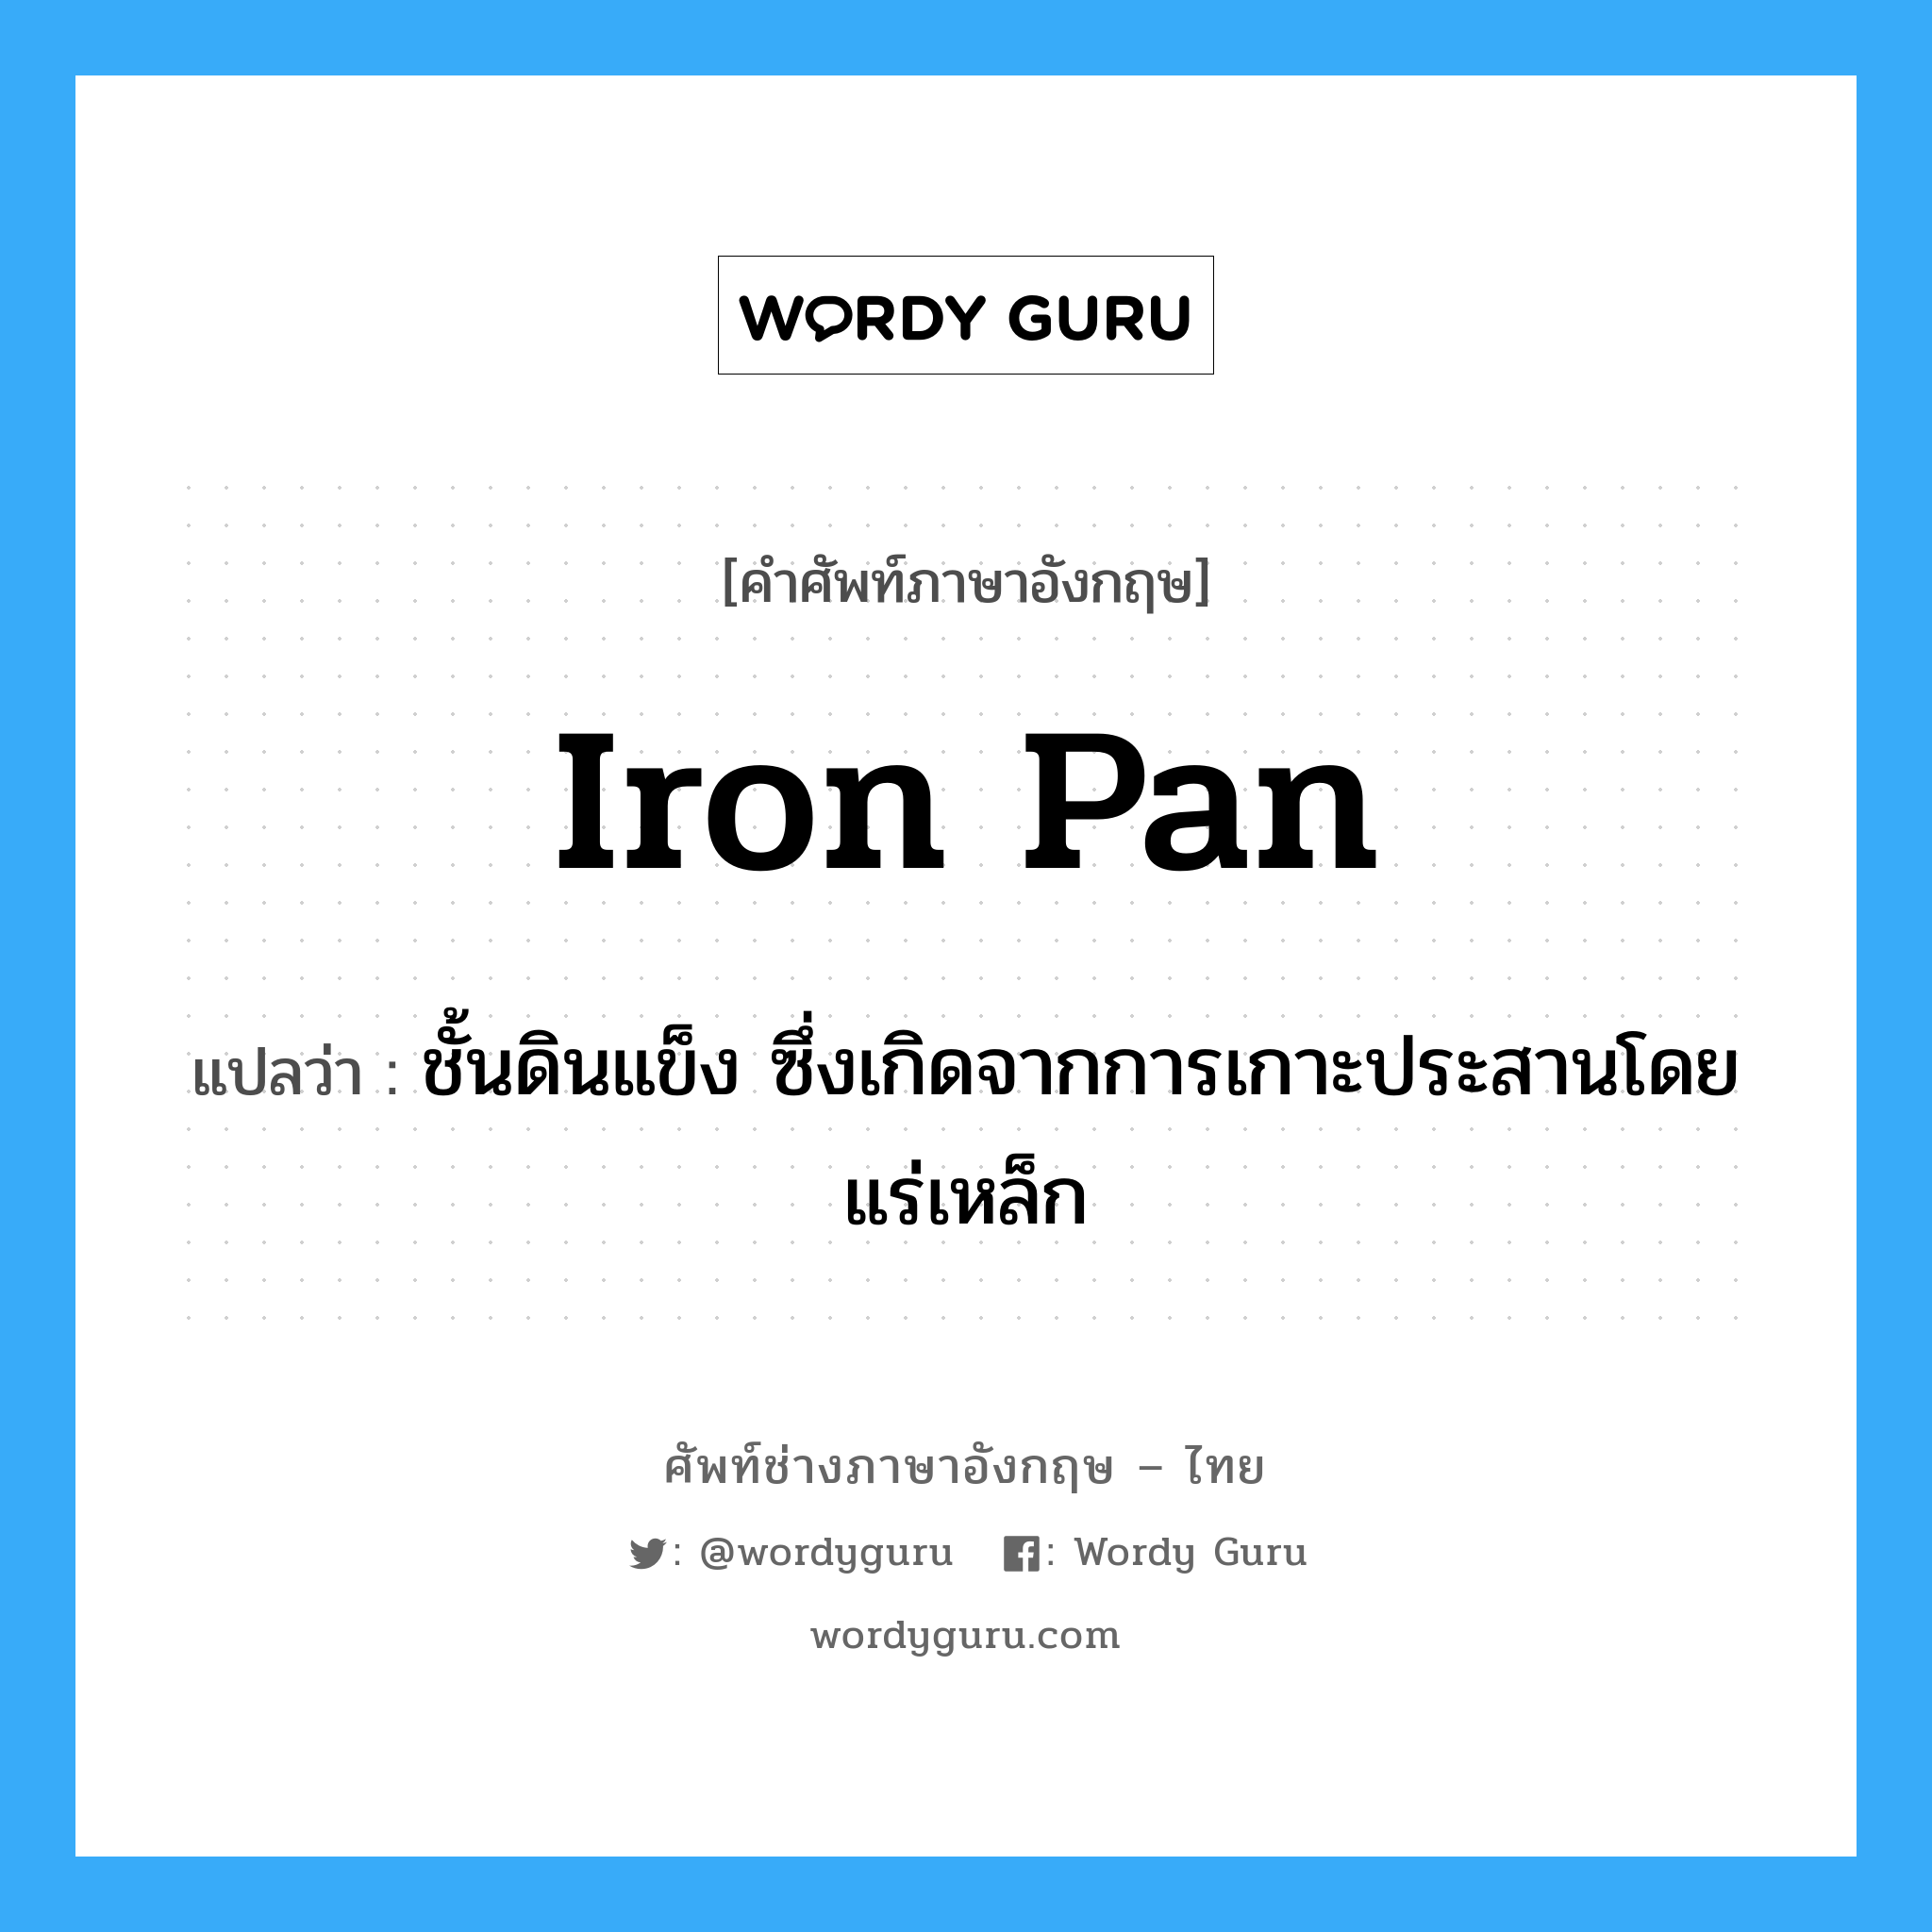 iron pan แปลว่า?, คำศัพท์ช่างภาษาอังกฤษ - ไทย iron pan คำศัพท์ภาษาอังกฤษ iron pan แปลว่า ชั้นดินแข็ง ซึ่งเกิดจากการเกาะประสานโดยแร่เหล็ก